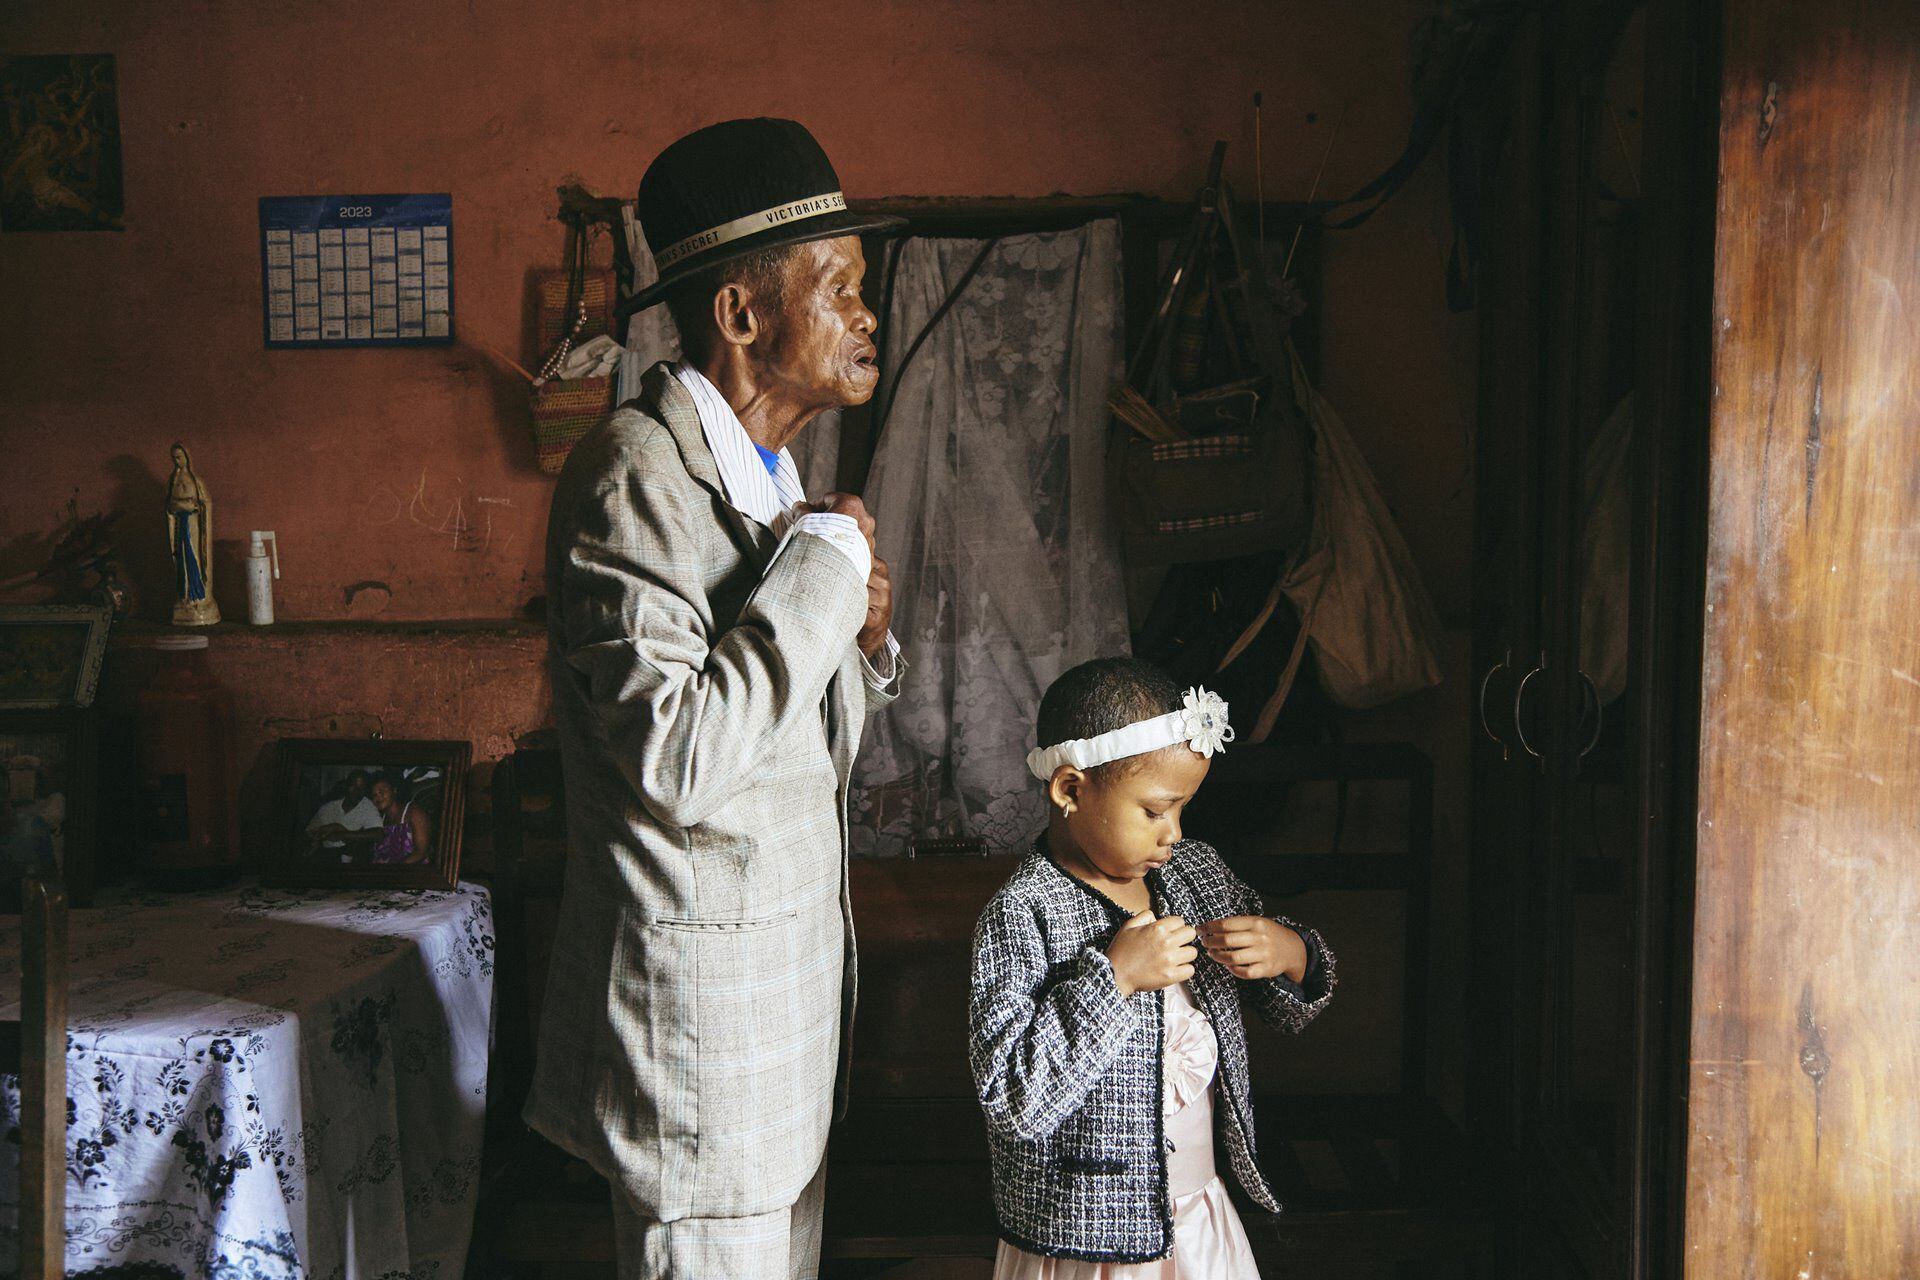 La fotógrafa de GEO, Lee-Ann Olwage, de Sudáfrica ganó la categoría de historia del año con imágenes que documentan la demencia en Madagascar. Fénykép: Lee-Ann Olwage